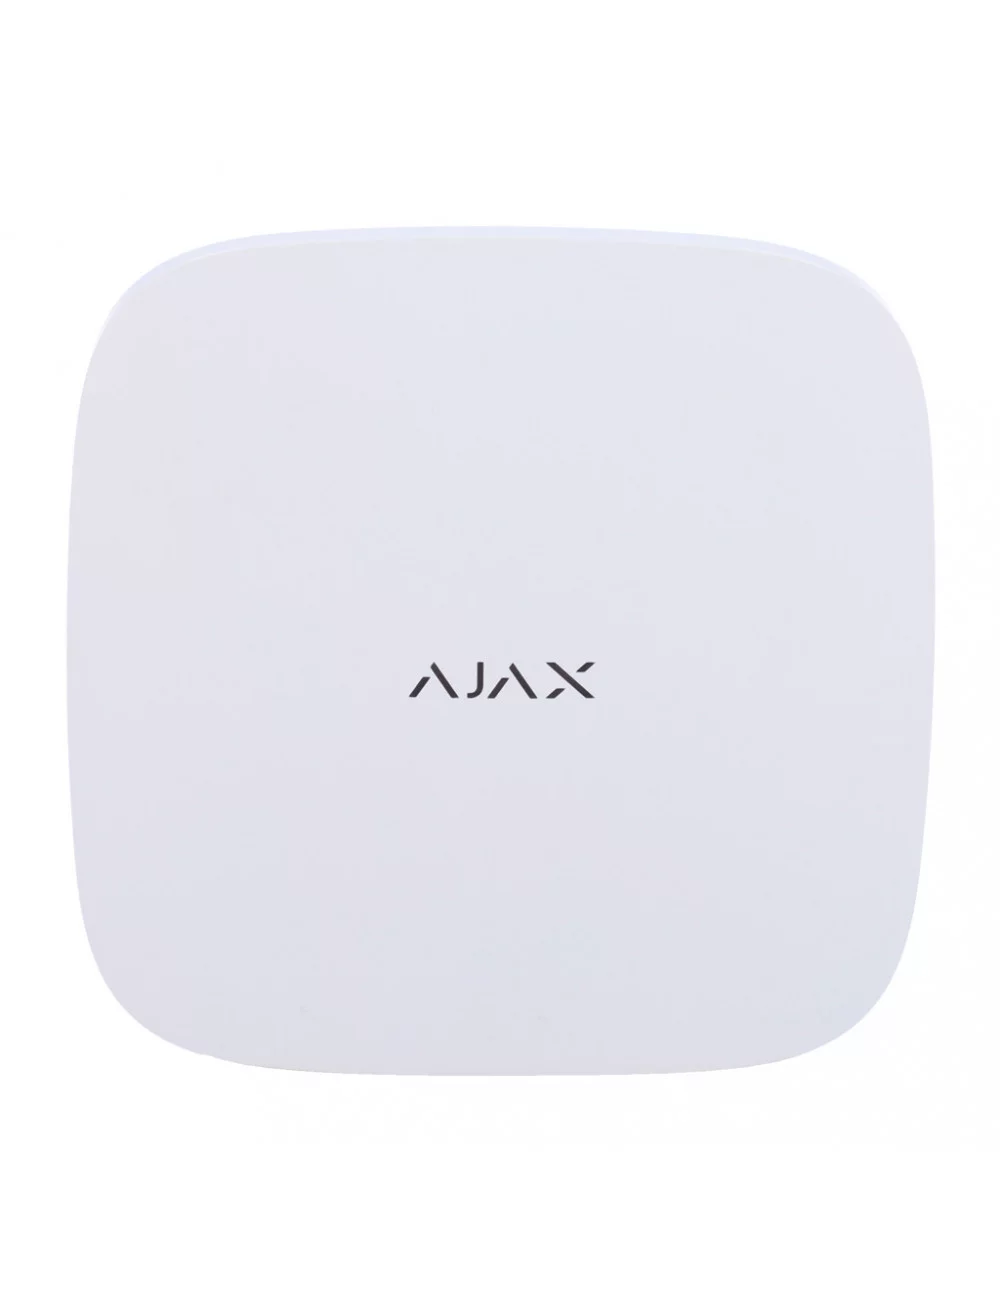 Ajax Hub 2 Plus Jeweller - Centrale d'alarme sans fil avec levée de doute photo